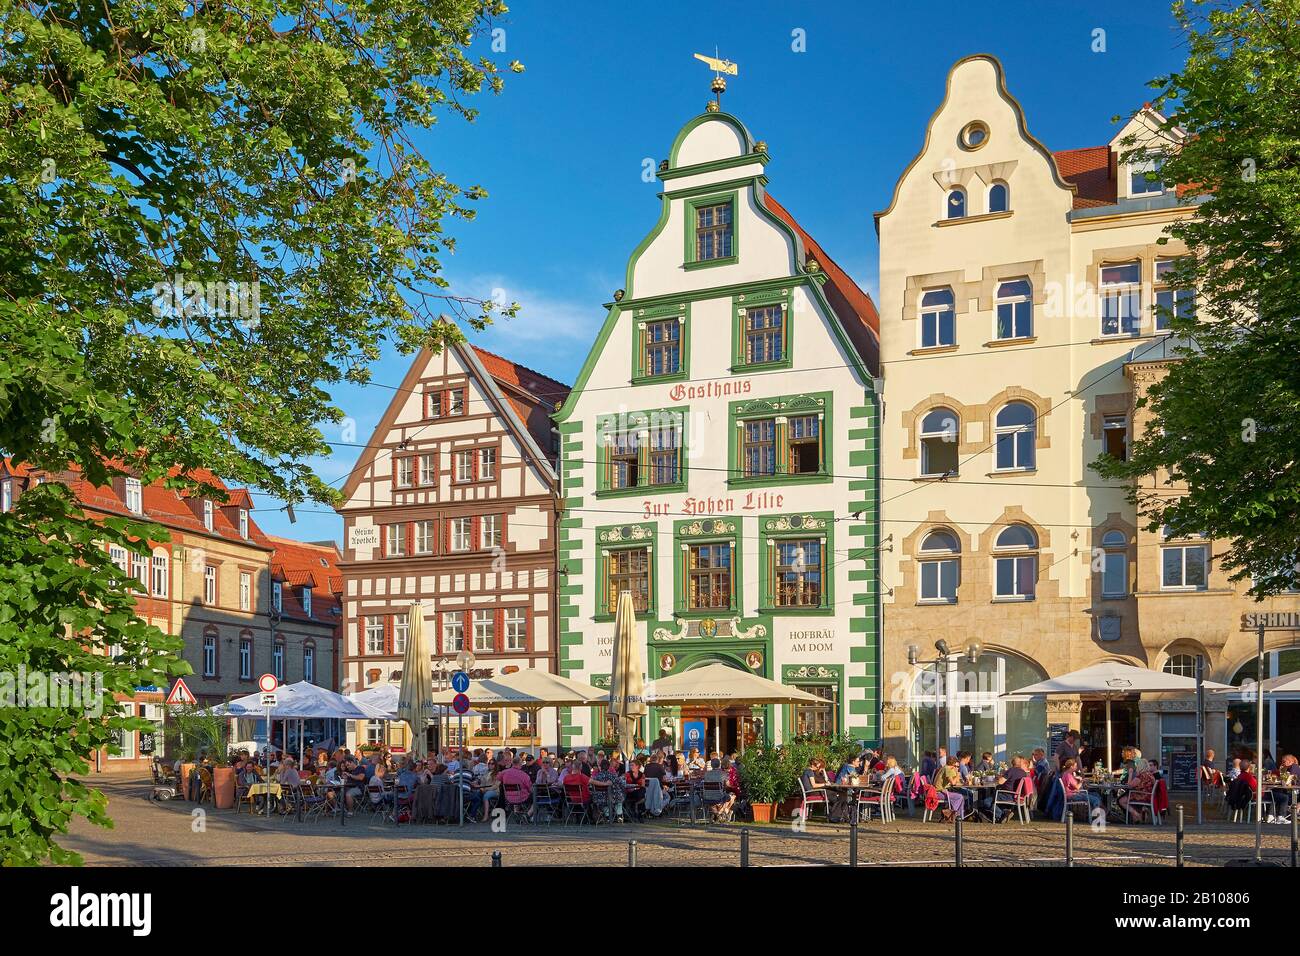 Haus der hohen Lilie am Domplatz in Erfurt, Thüringen, Deutschland Stockfoto